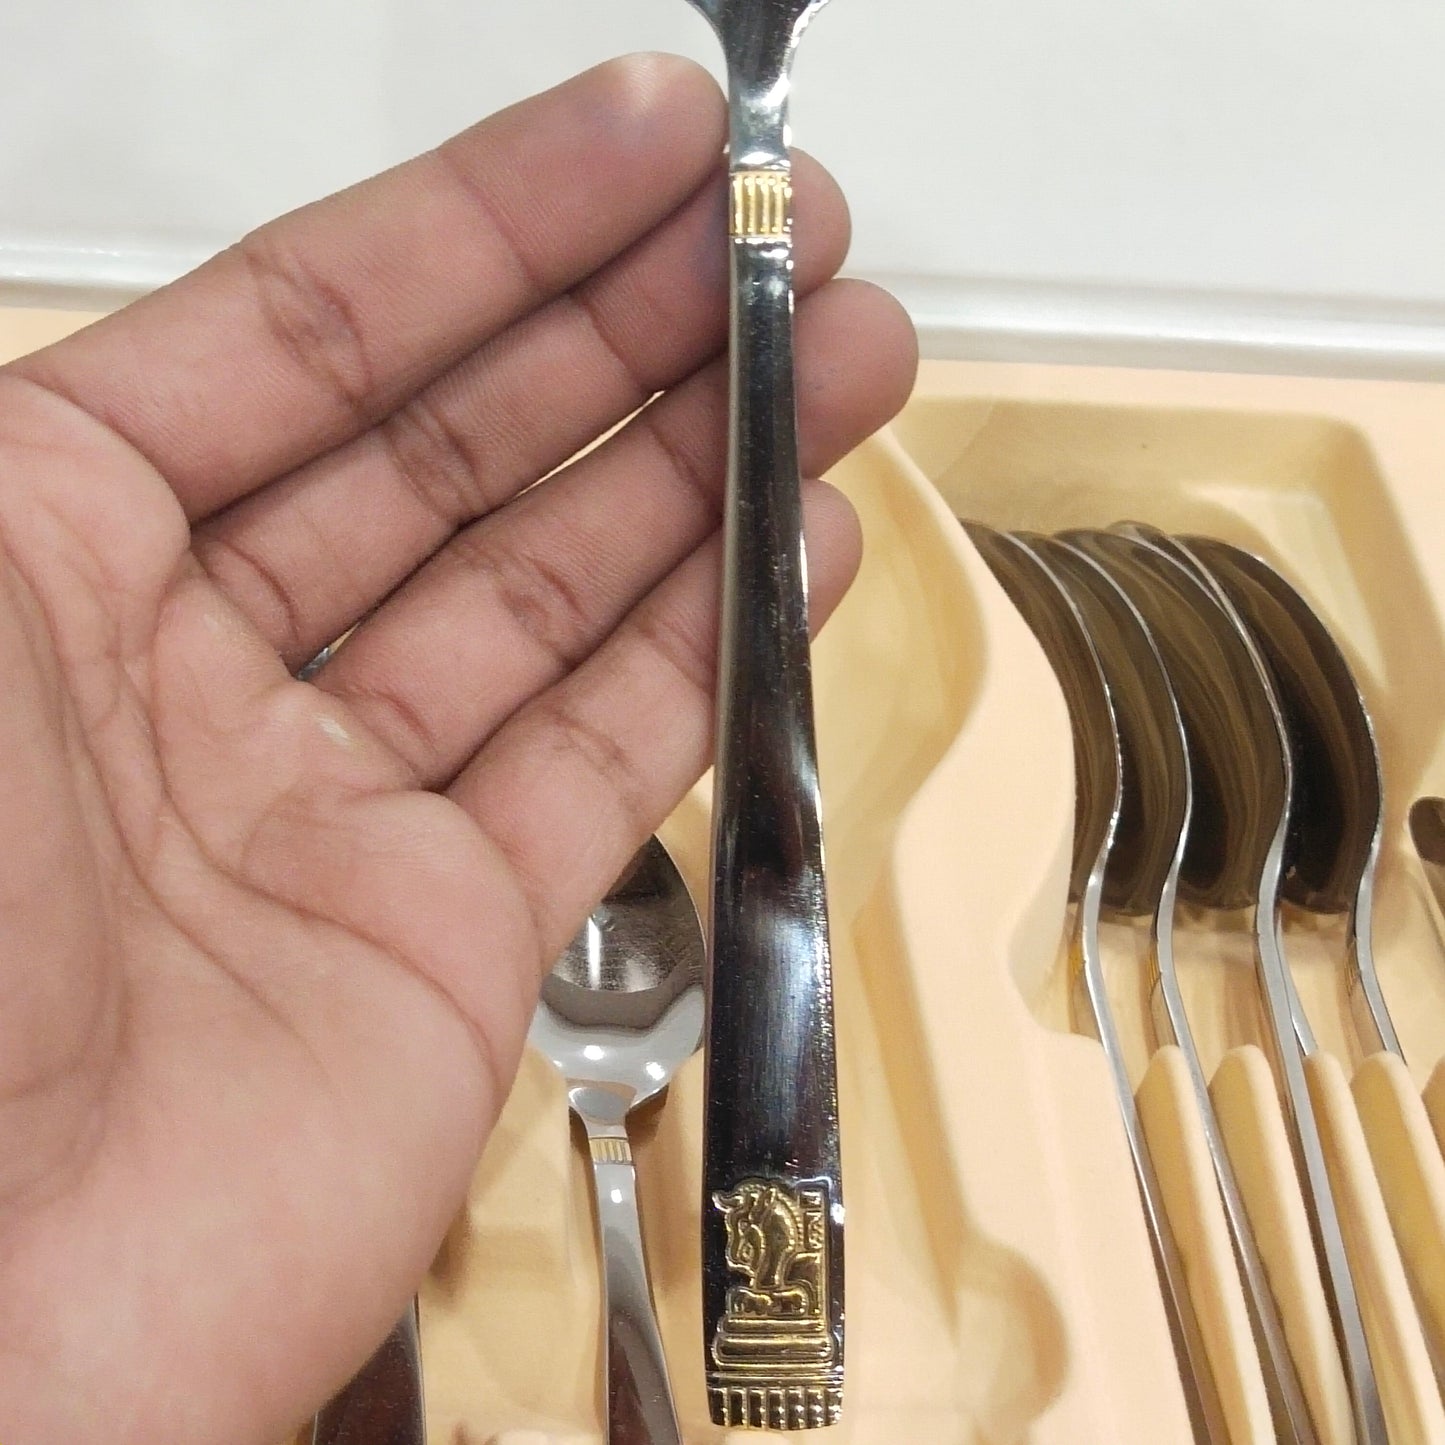 AlpenBerg 24 Pcs Cutlery Set